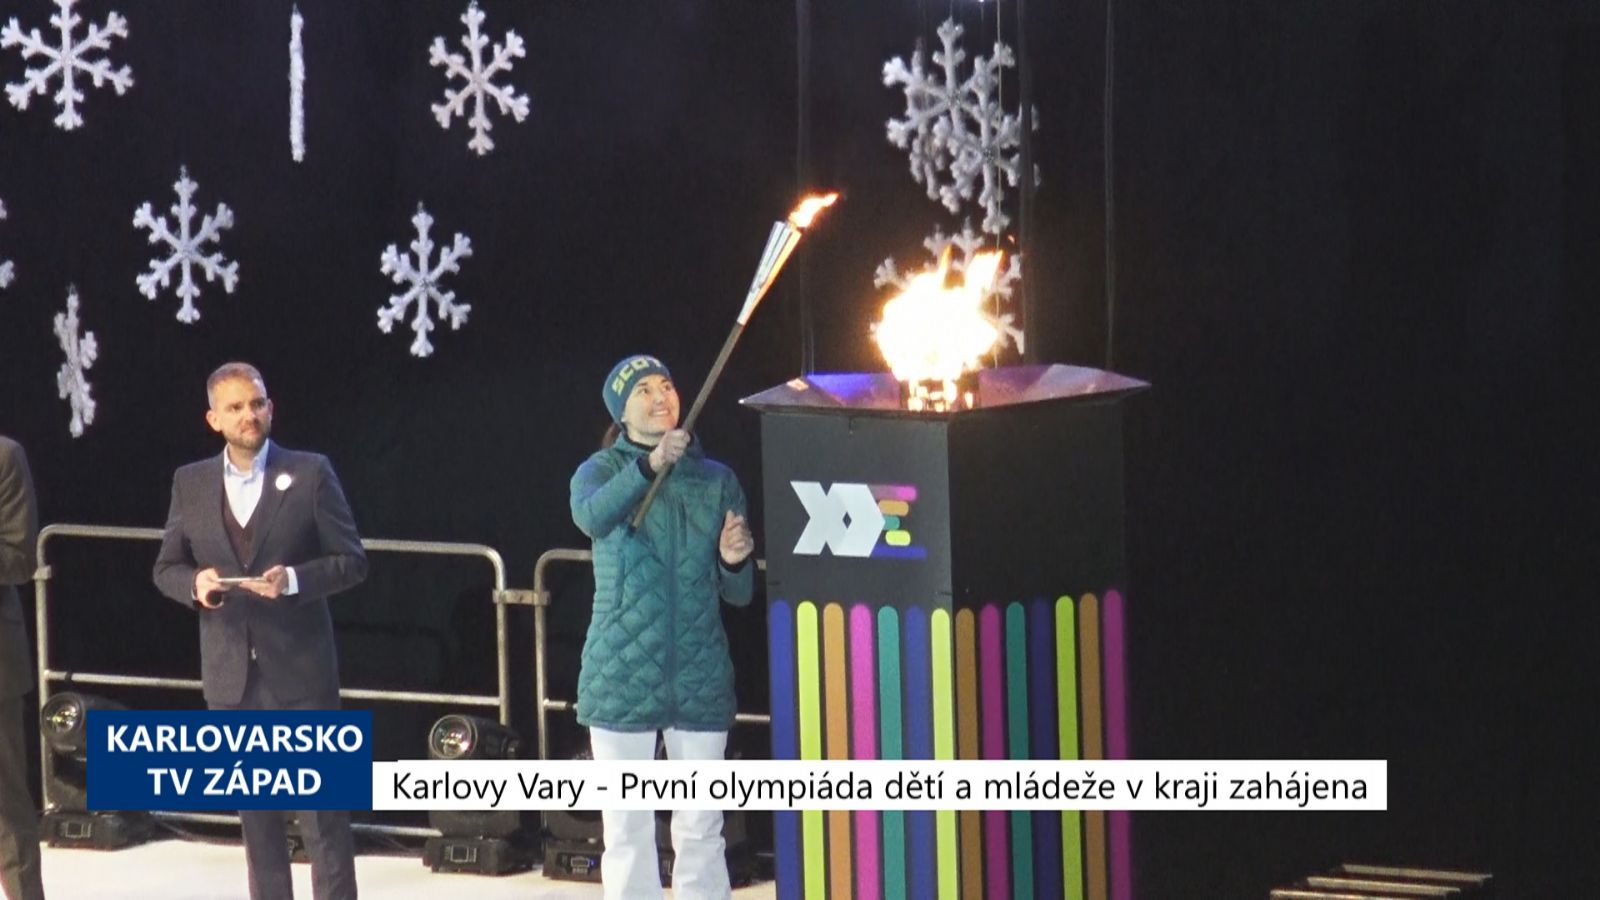 Karlovy Vary: První olympiáda dětí a mládeže v kraji zahájena (TV Západ)